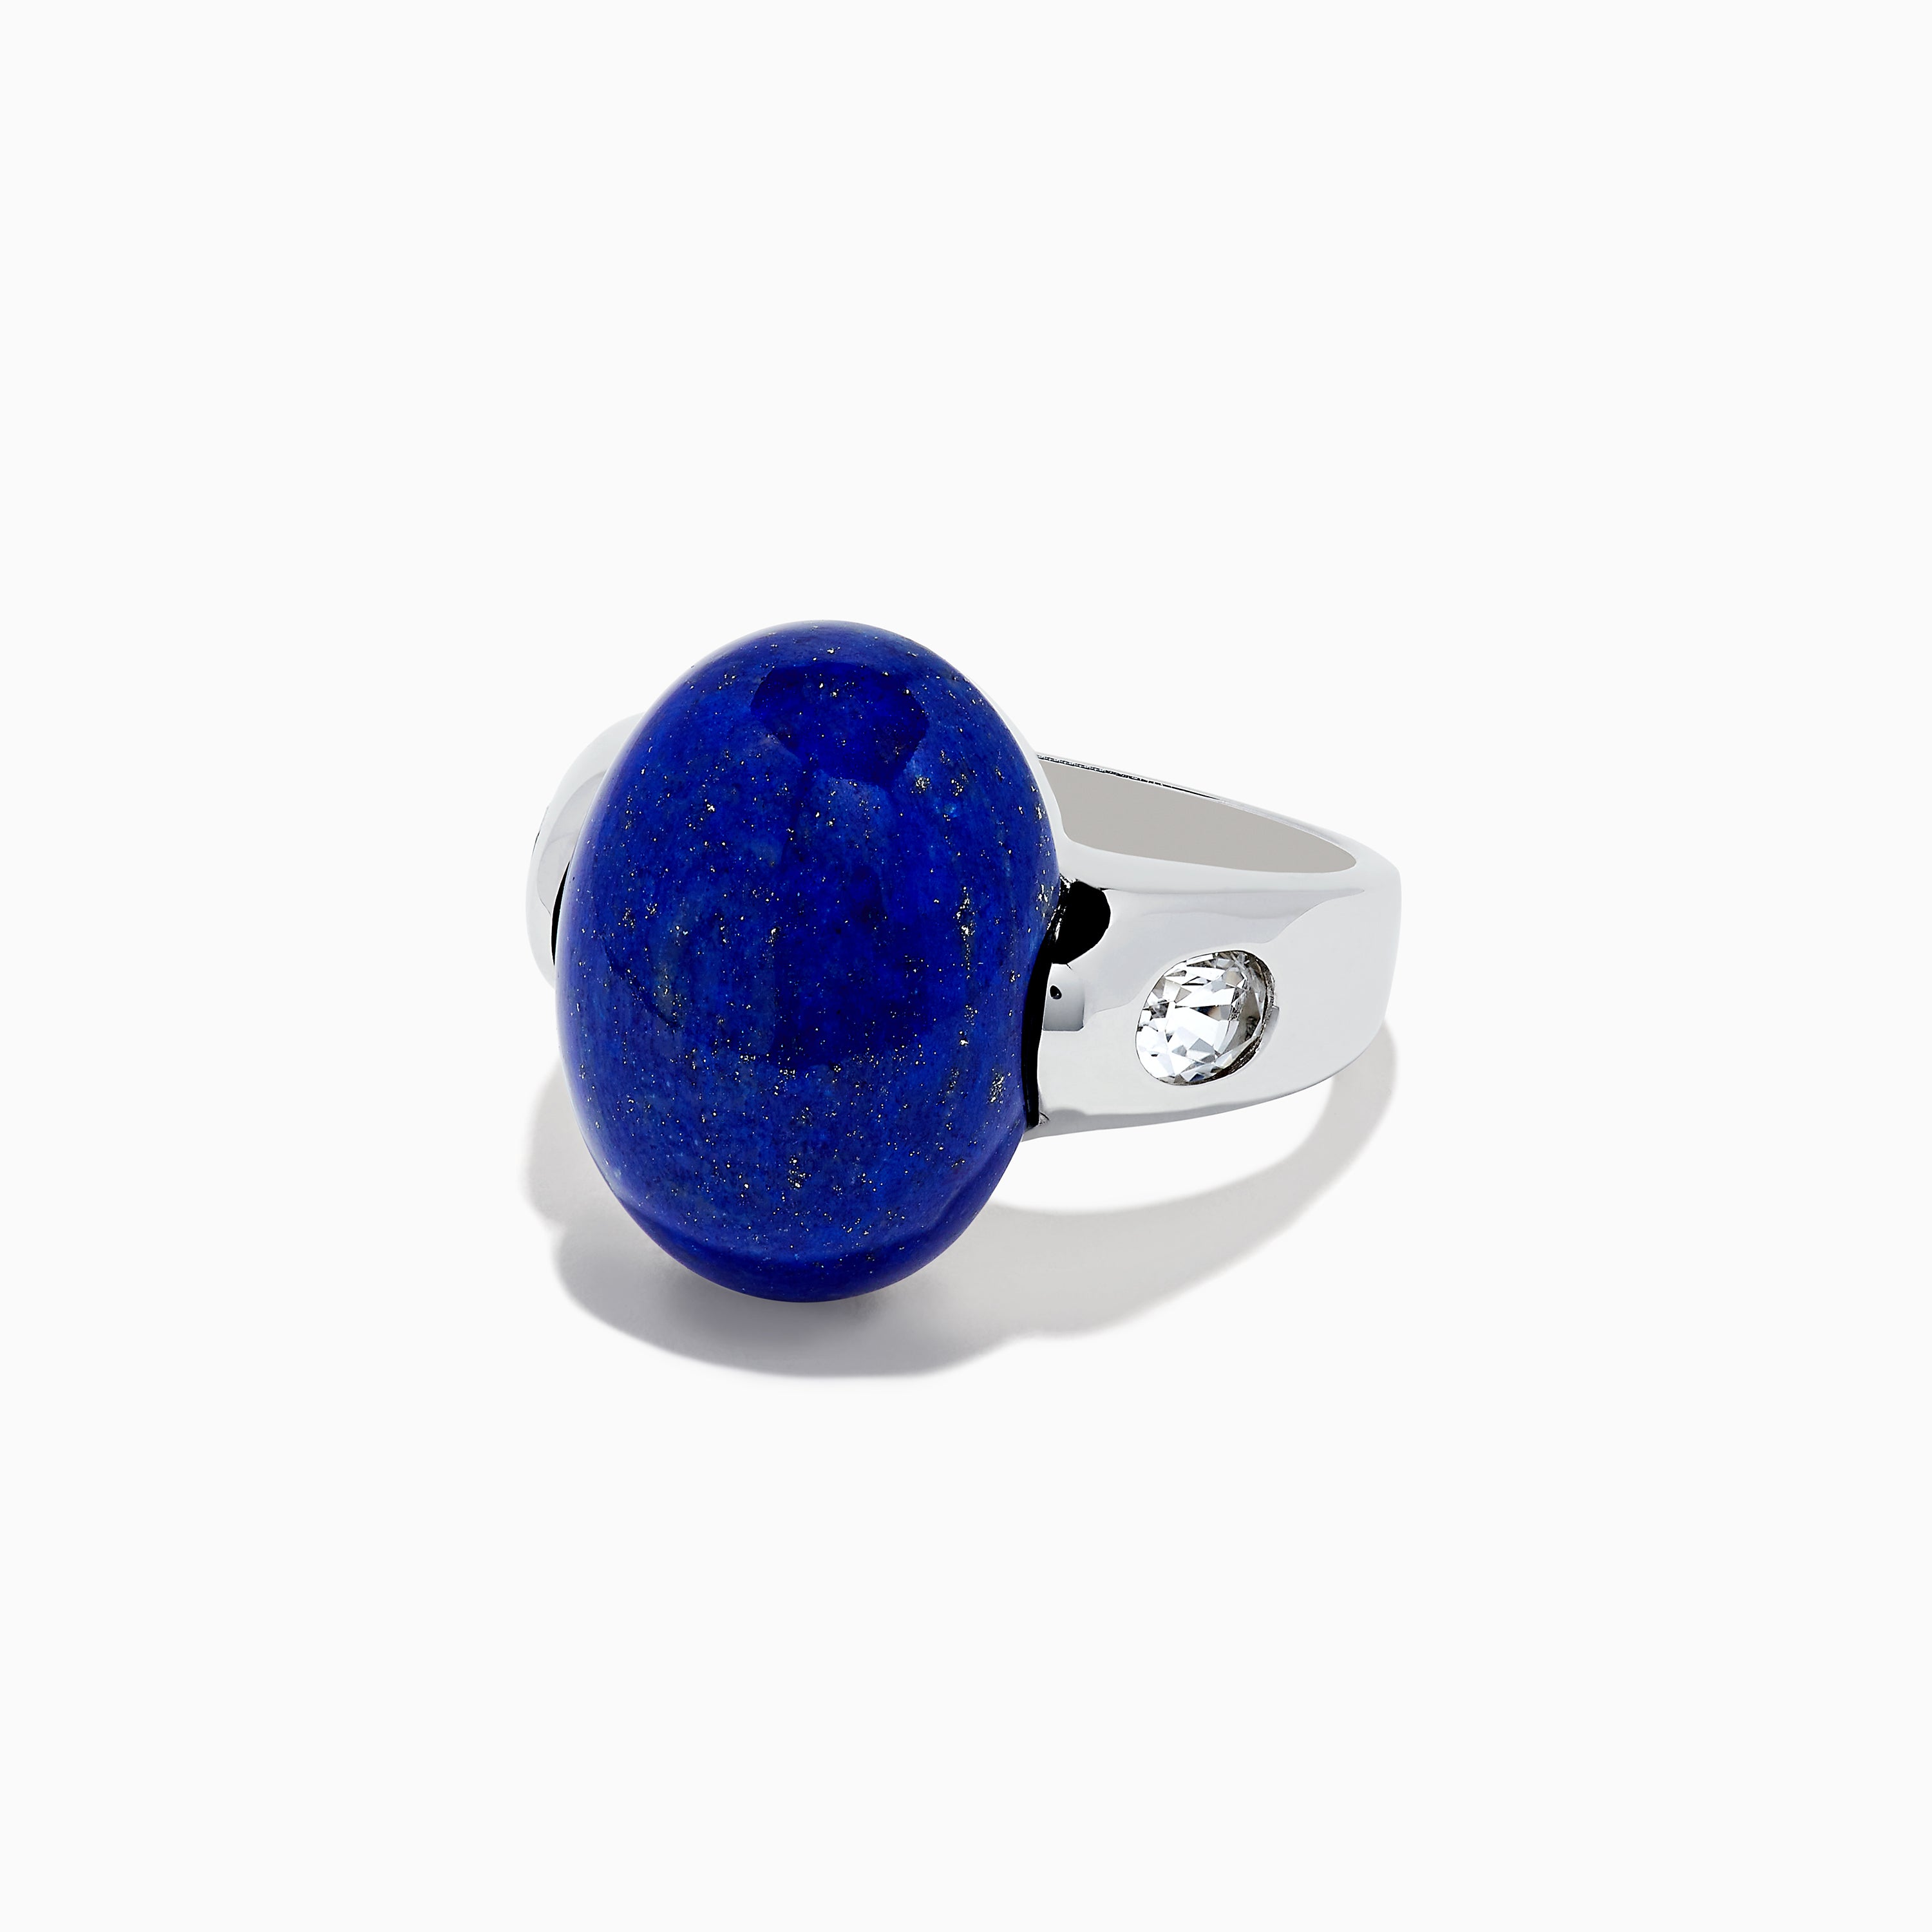 Buy Mens Lapis Ring Lajward Ring Sterling Silver Lapis Ring for Man Blue  Lapis Lazuli Ring Gift for Him Lapis Birthstone Ring Man Rings Online in  India - Etsy